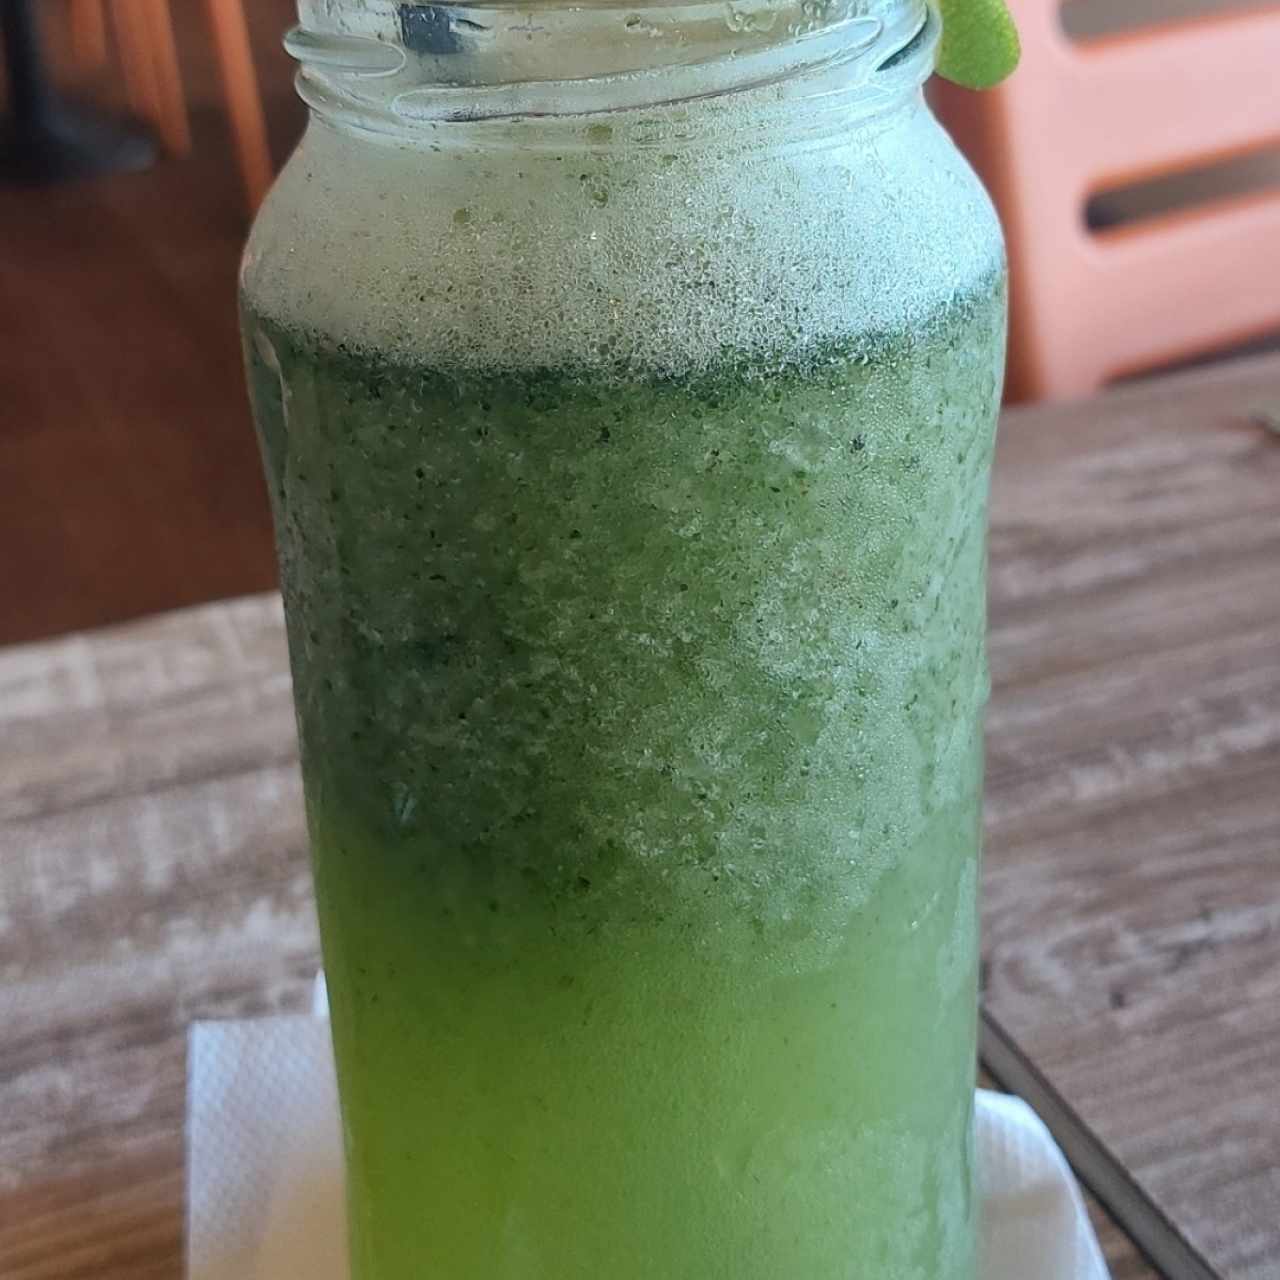 limonada con hierbabuena 